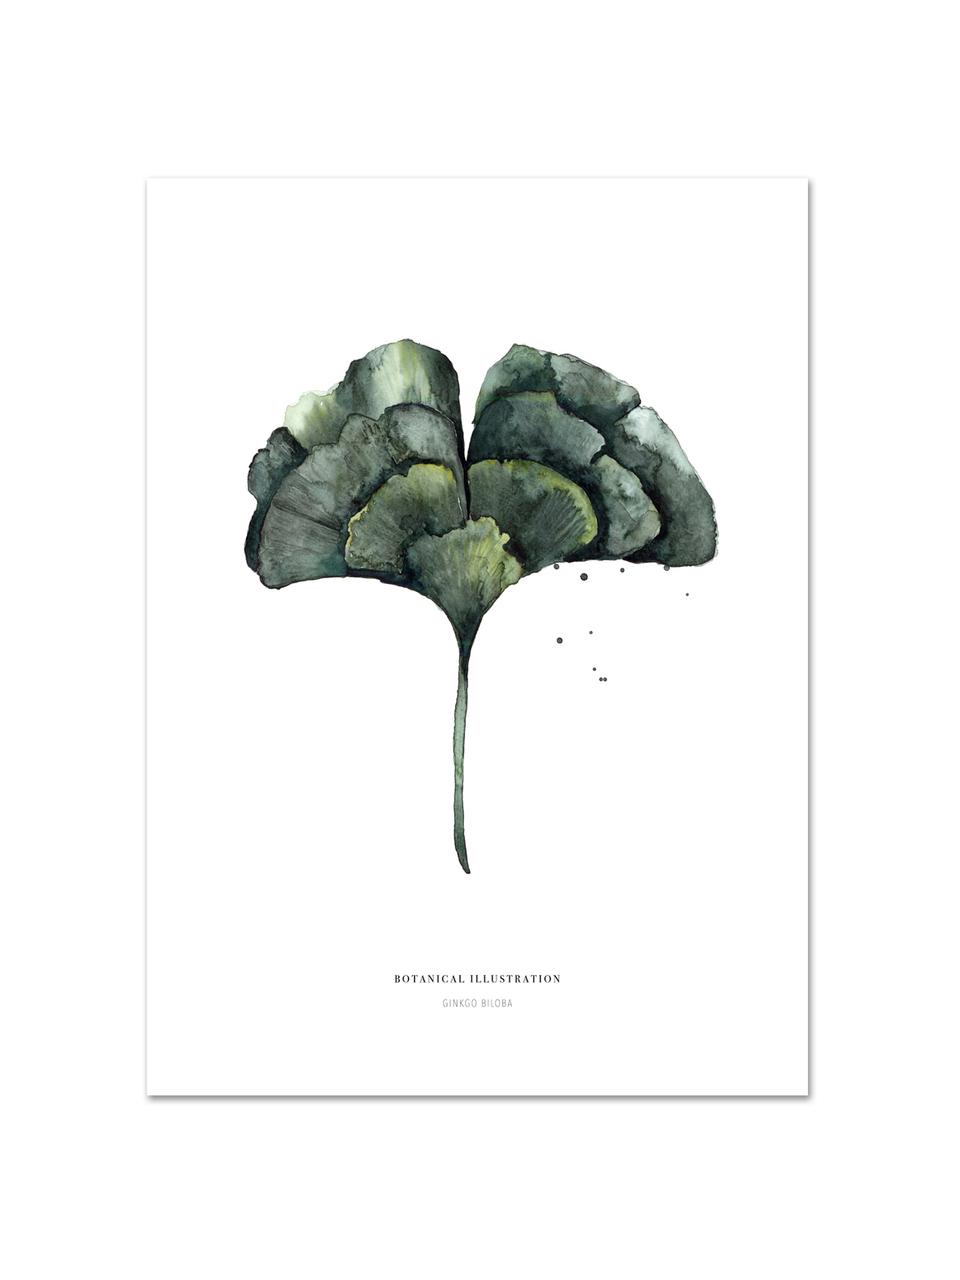 Plakát Ginko, Digitální tisk na papír, 200 g/m², Bílá, zelená, Š 21 cm, V 30 cm